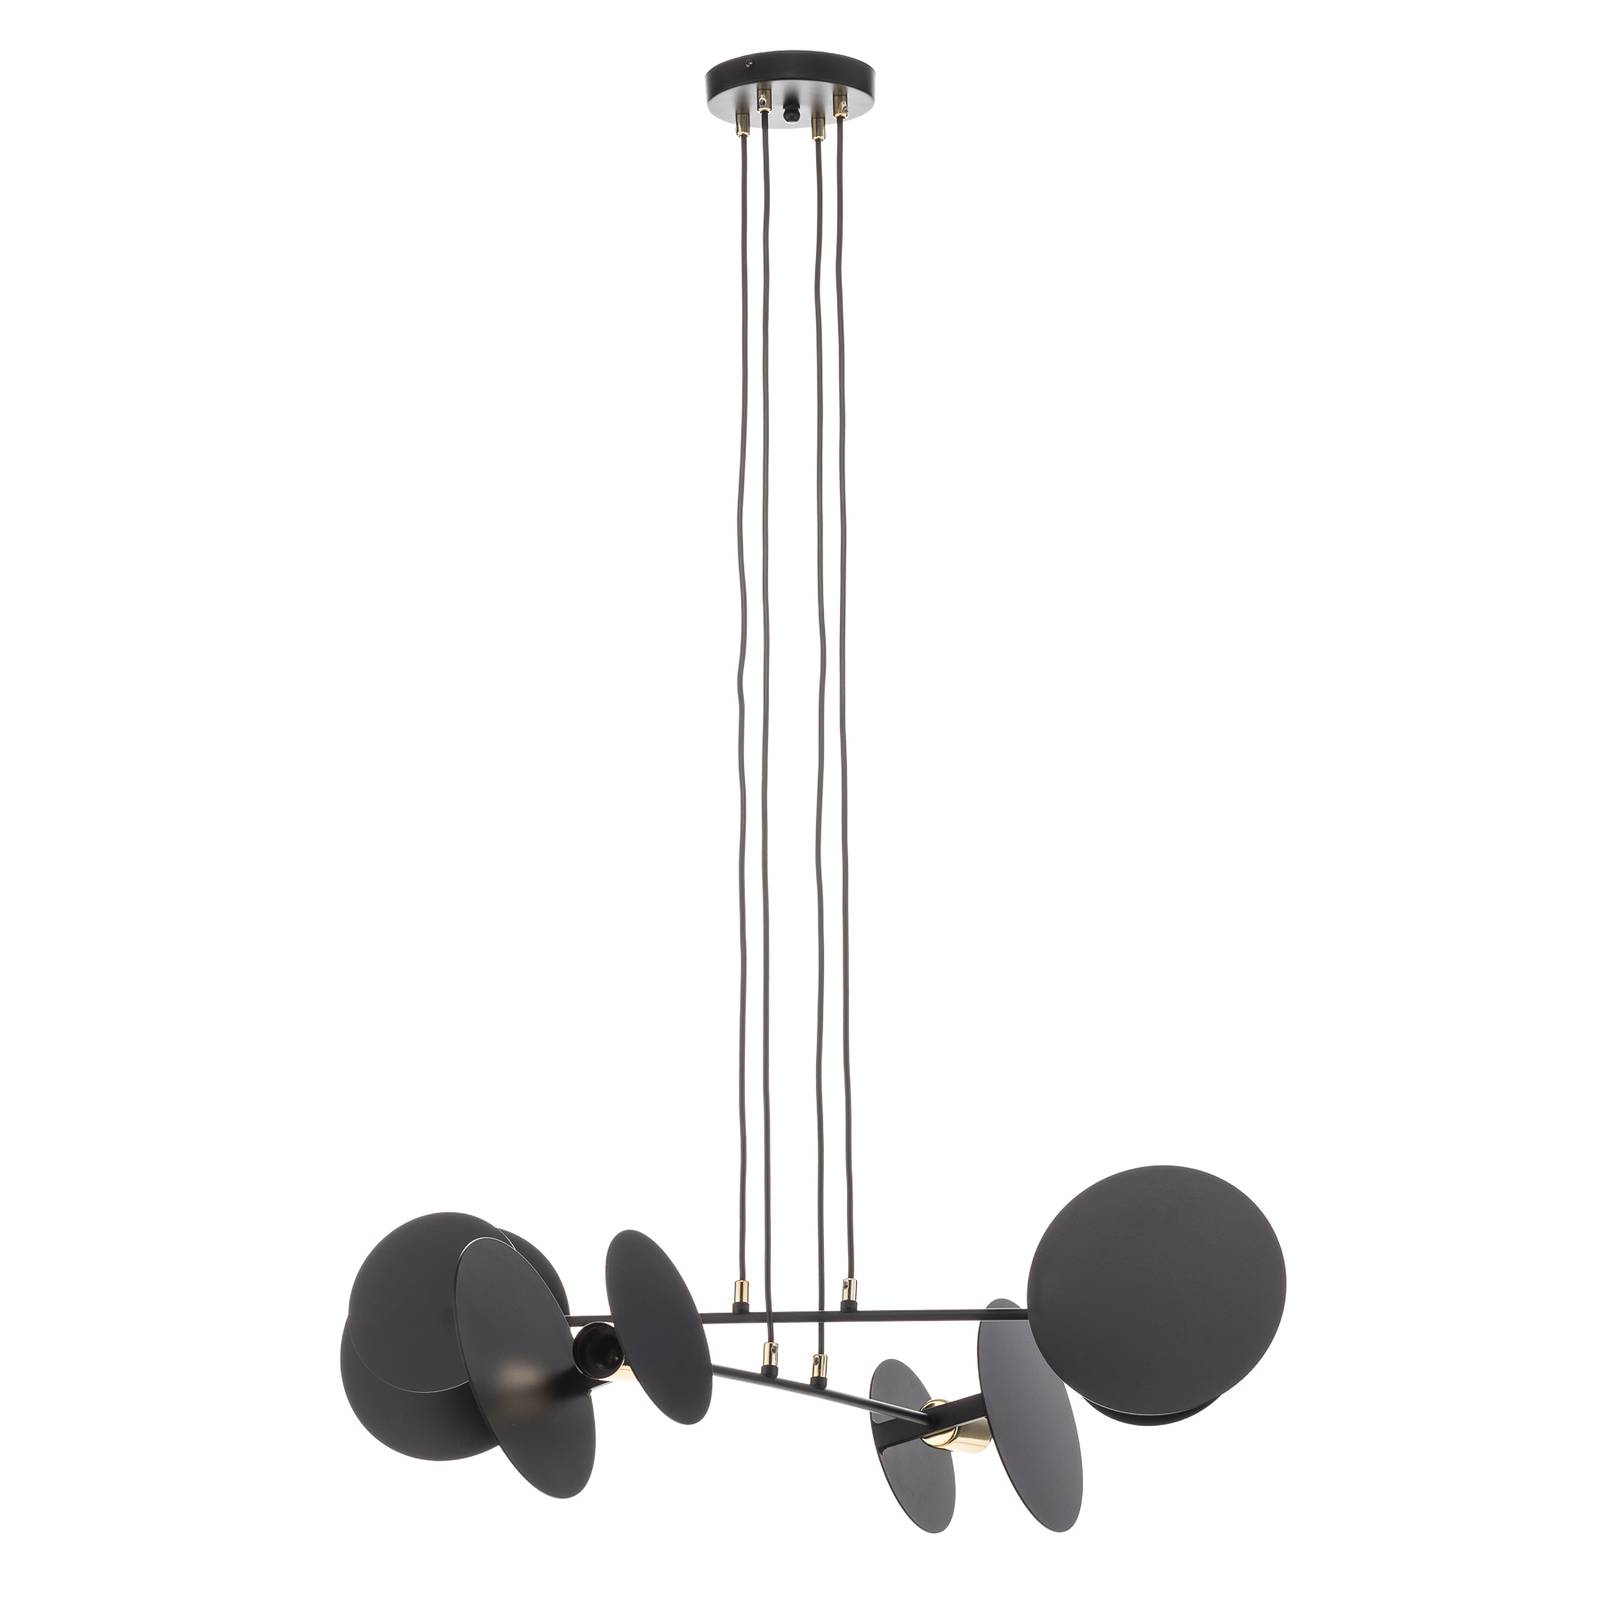 Emibig - Hanglamp Idea 4 Ø 96 cm - Zwart